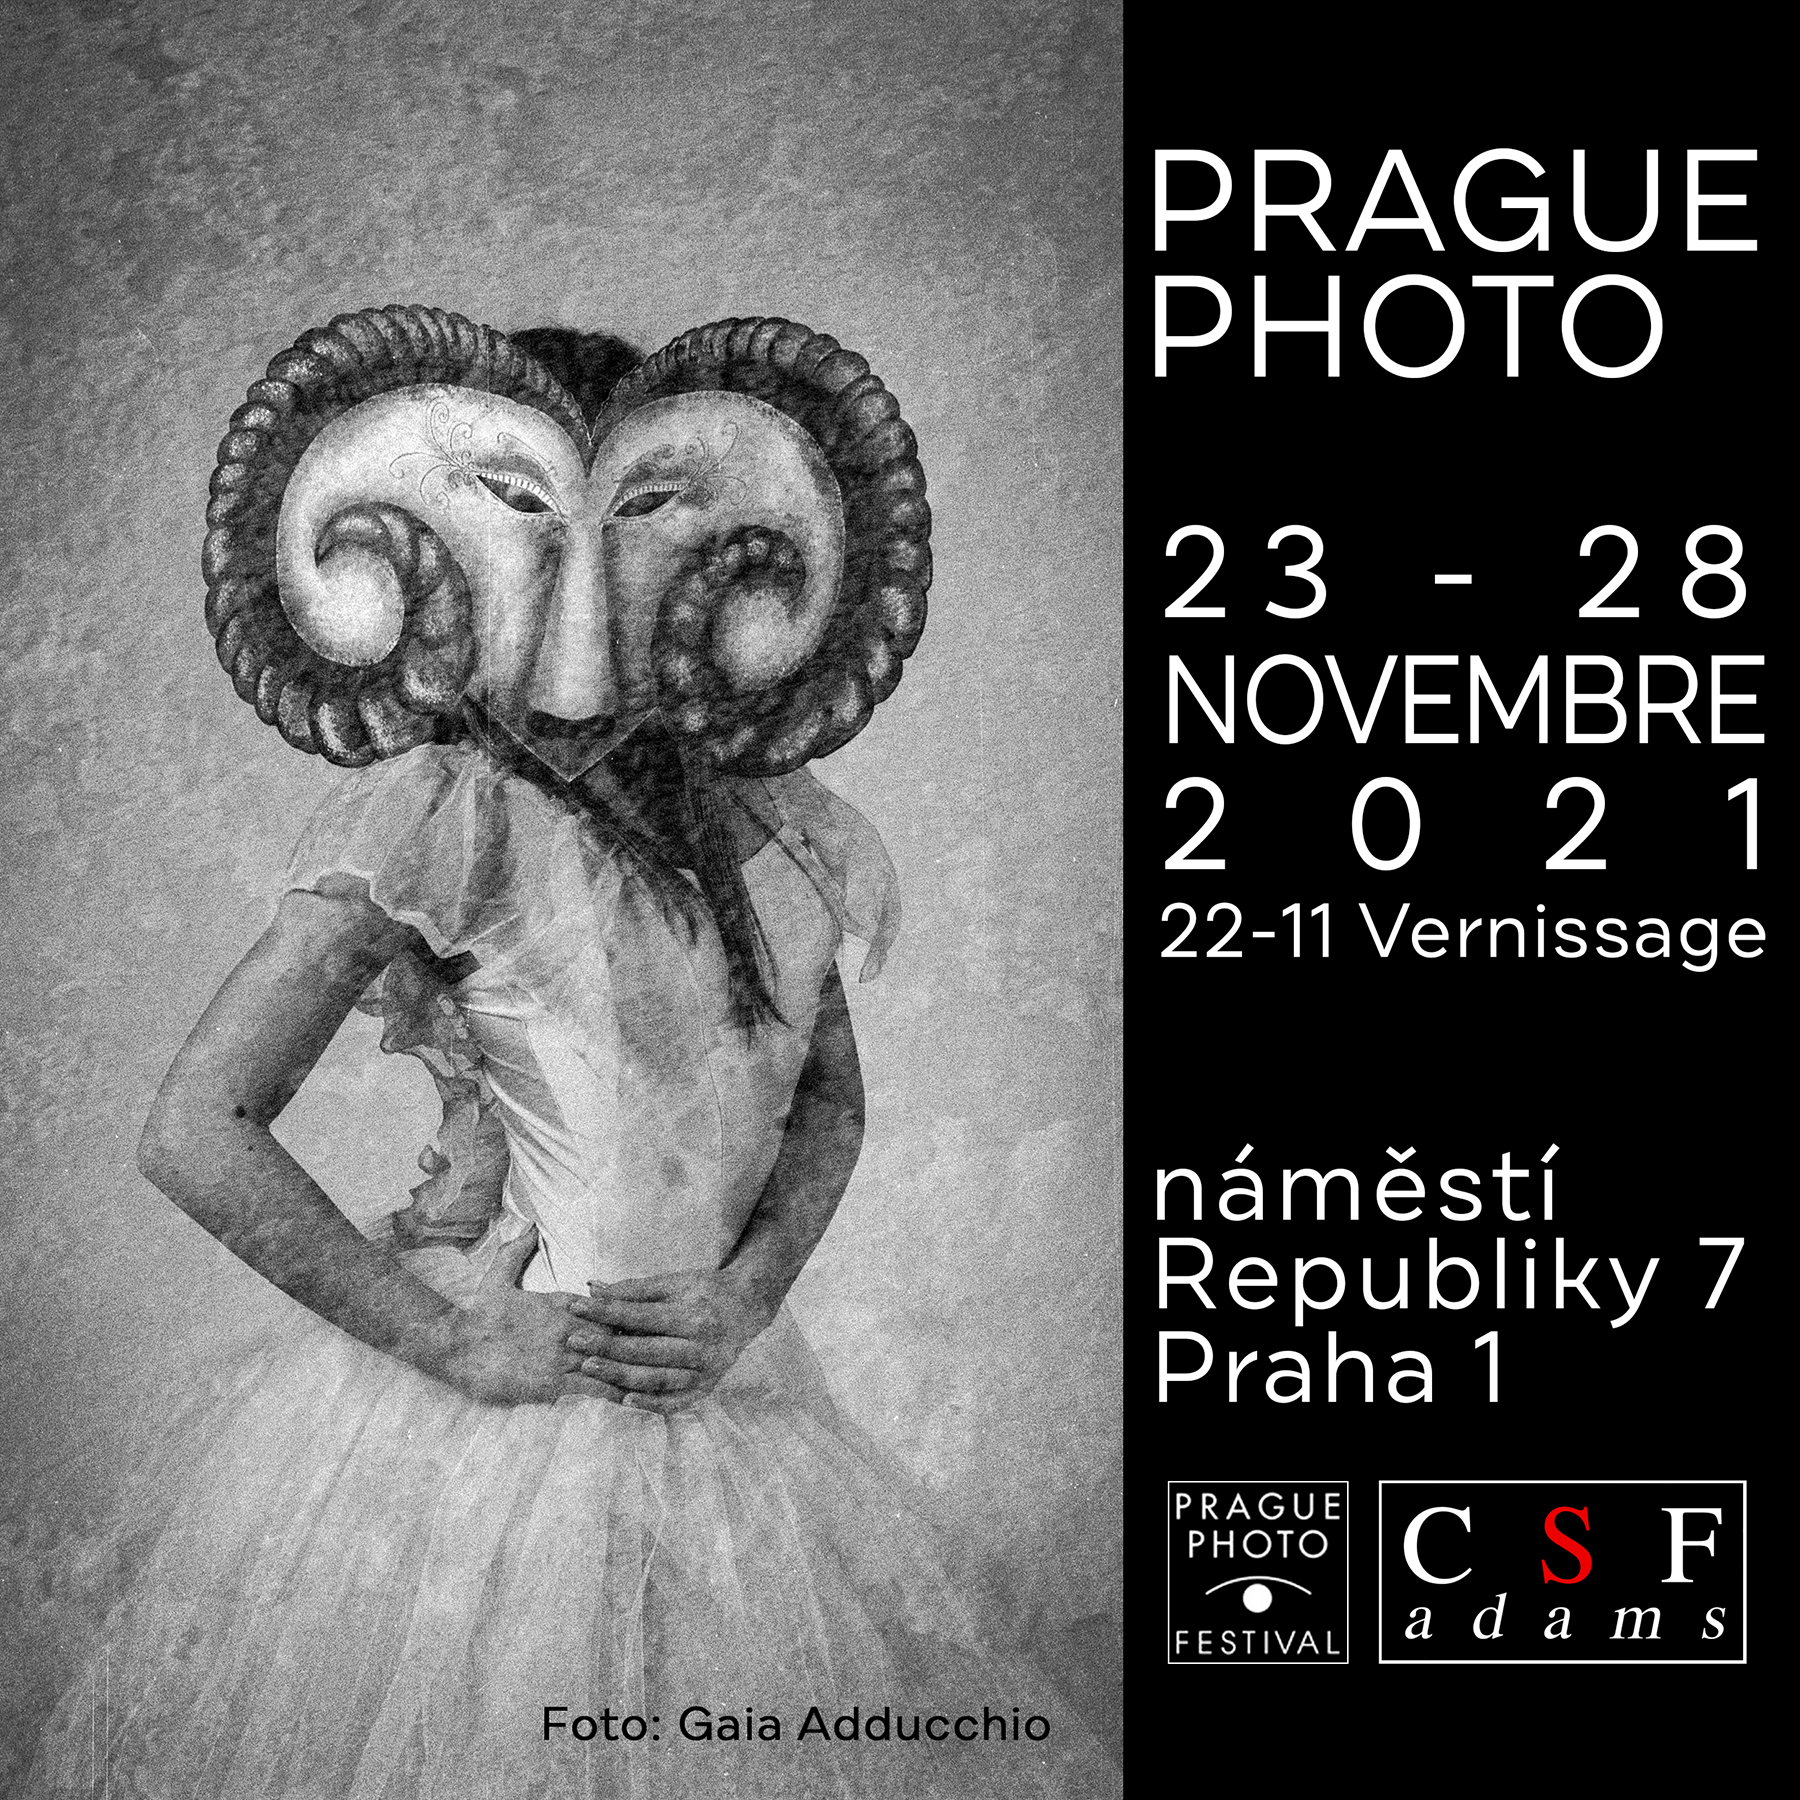 Praga photo 2021 